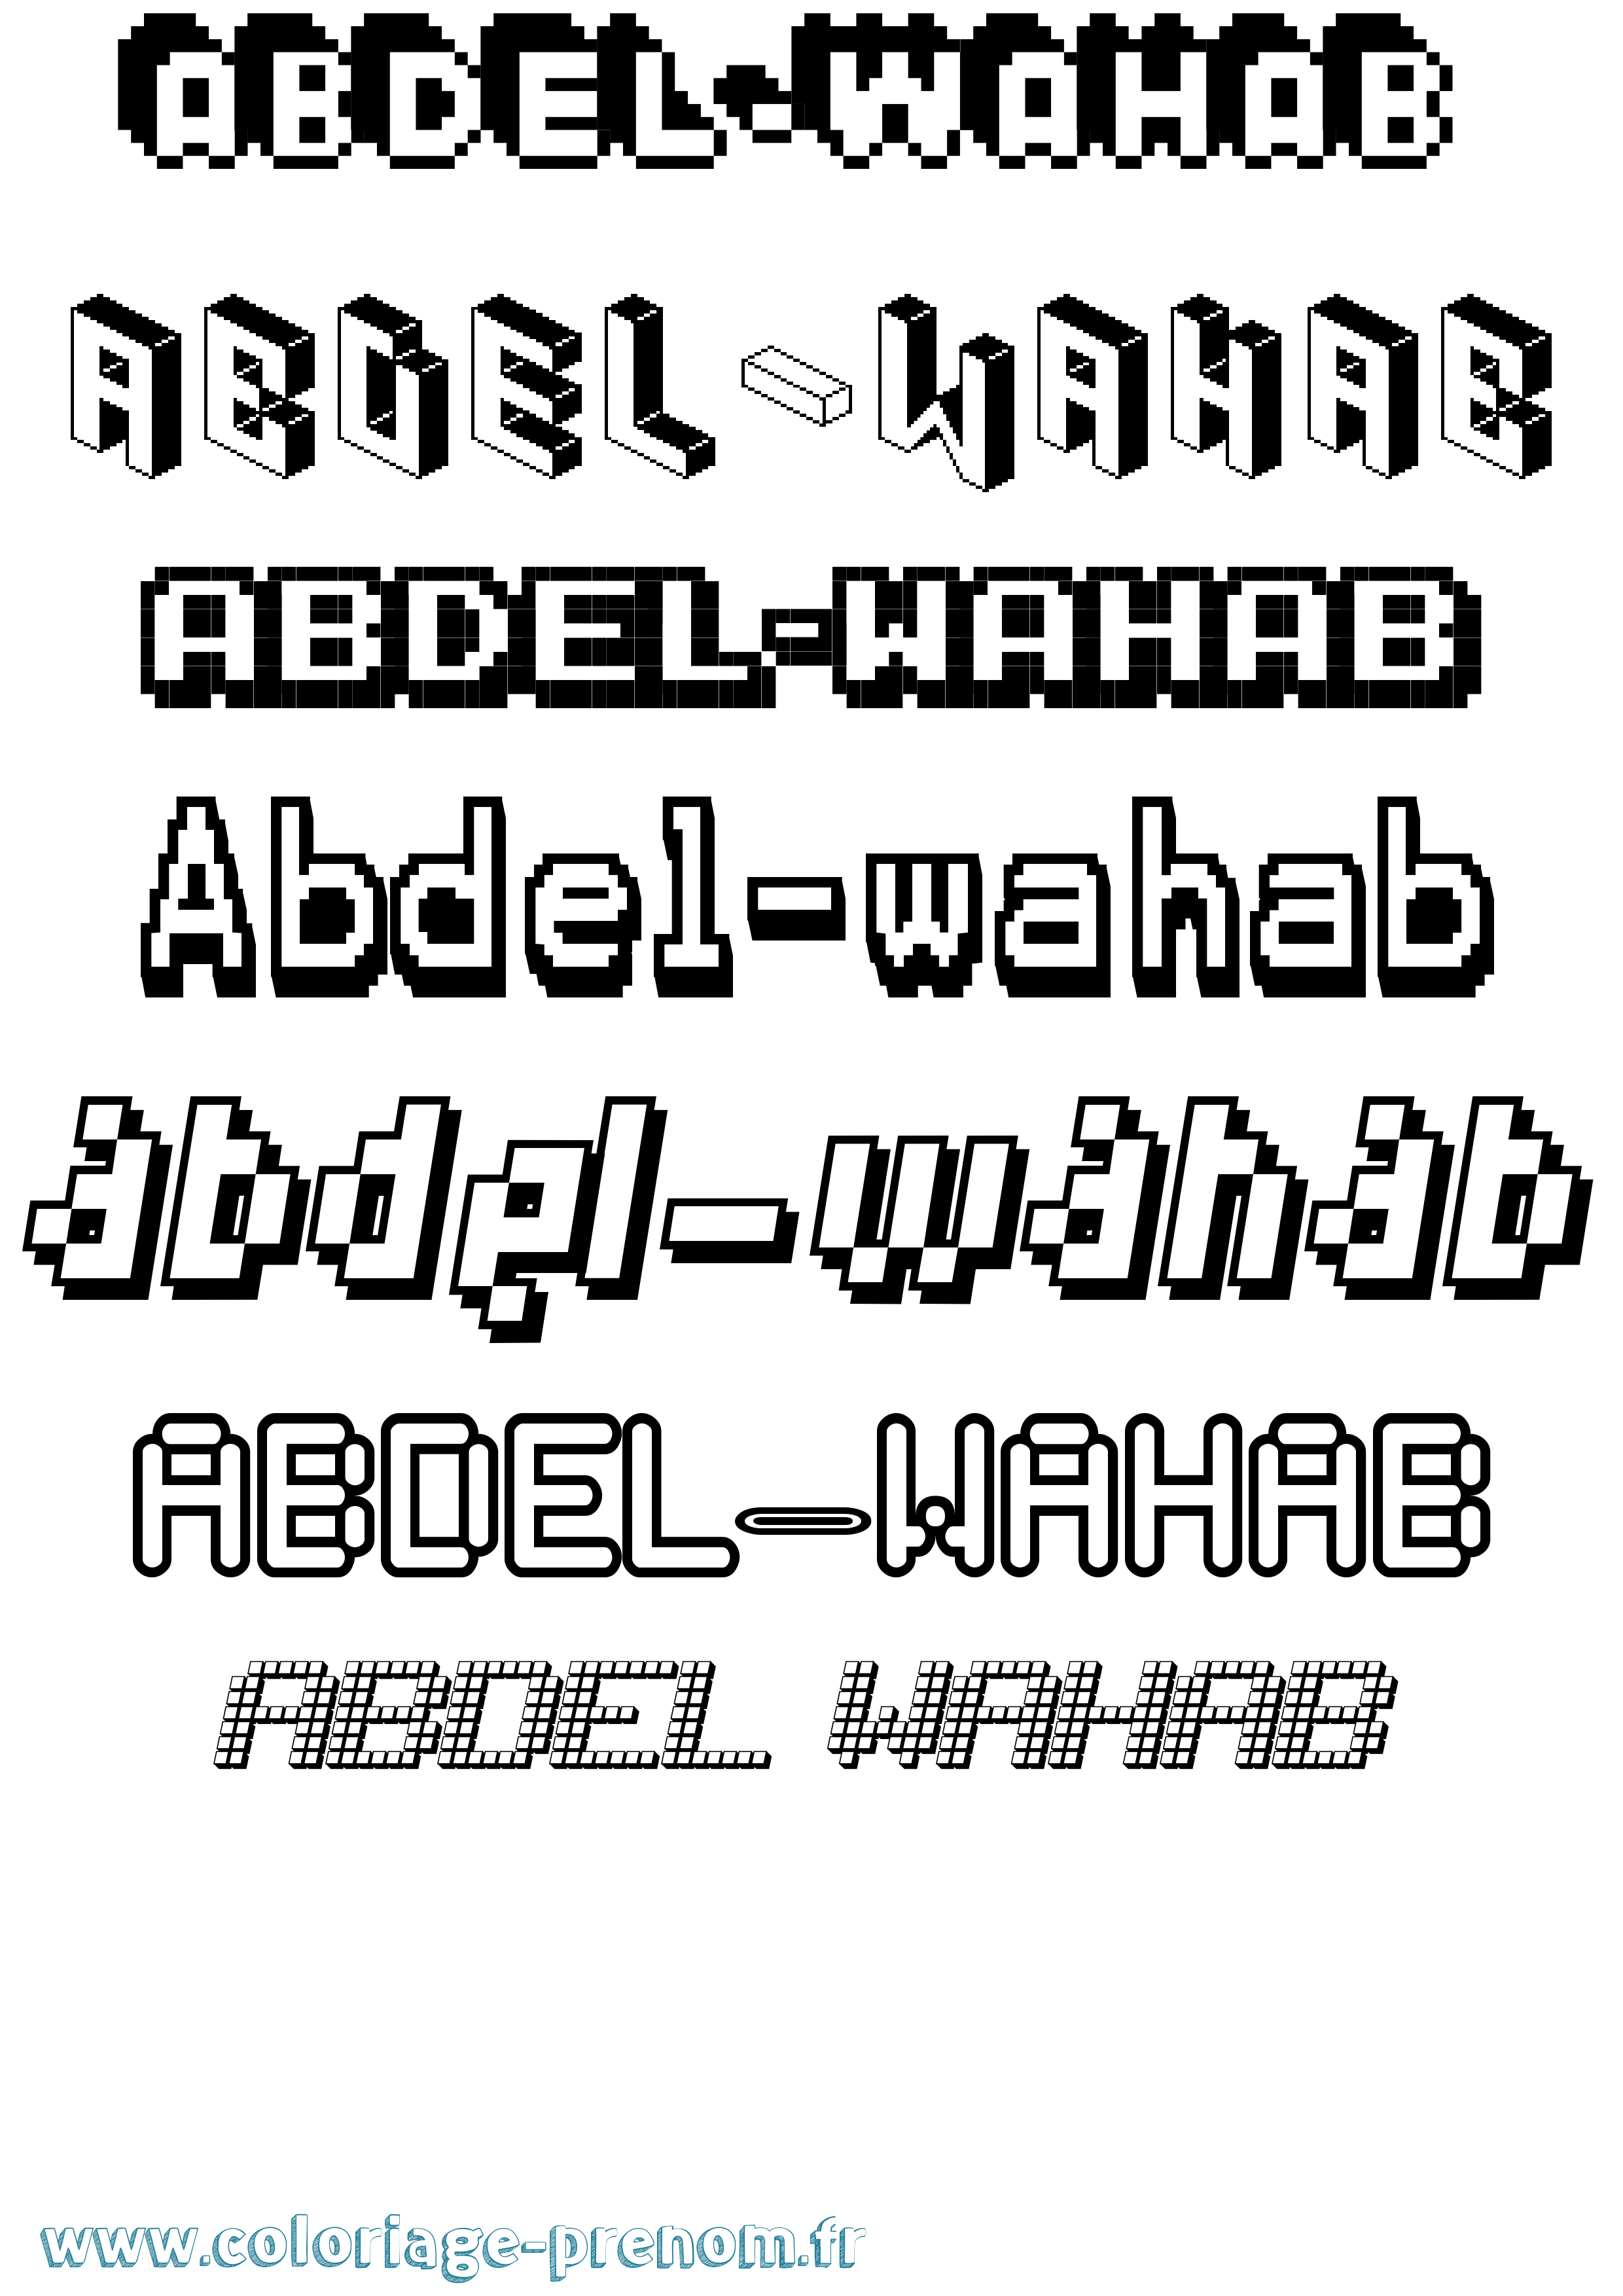 Coloriage prénom Abdel-Wahab Pixel